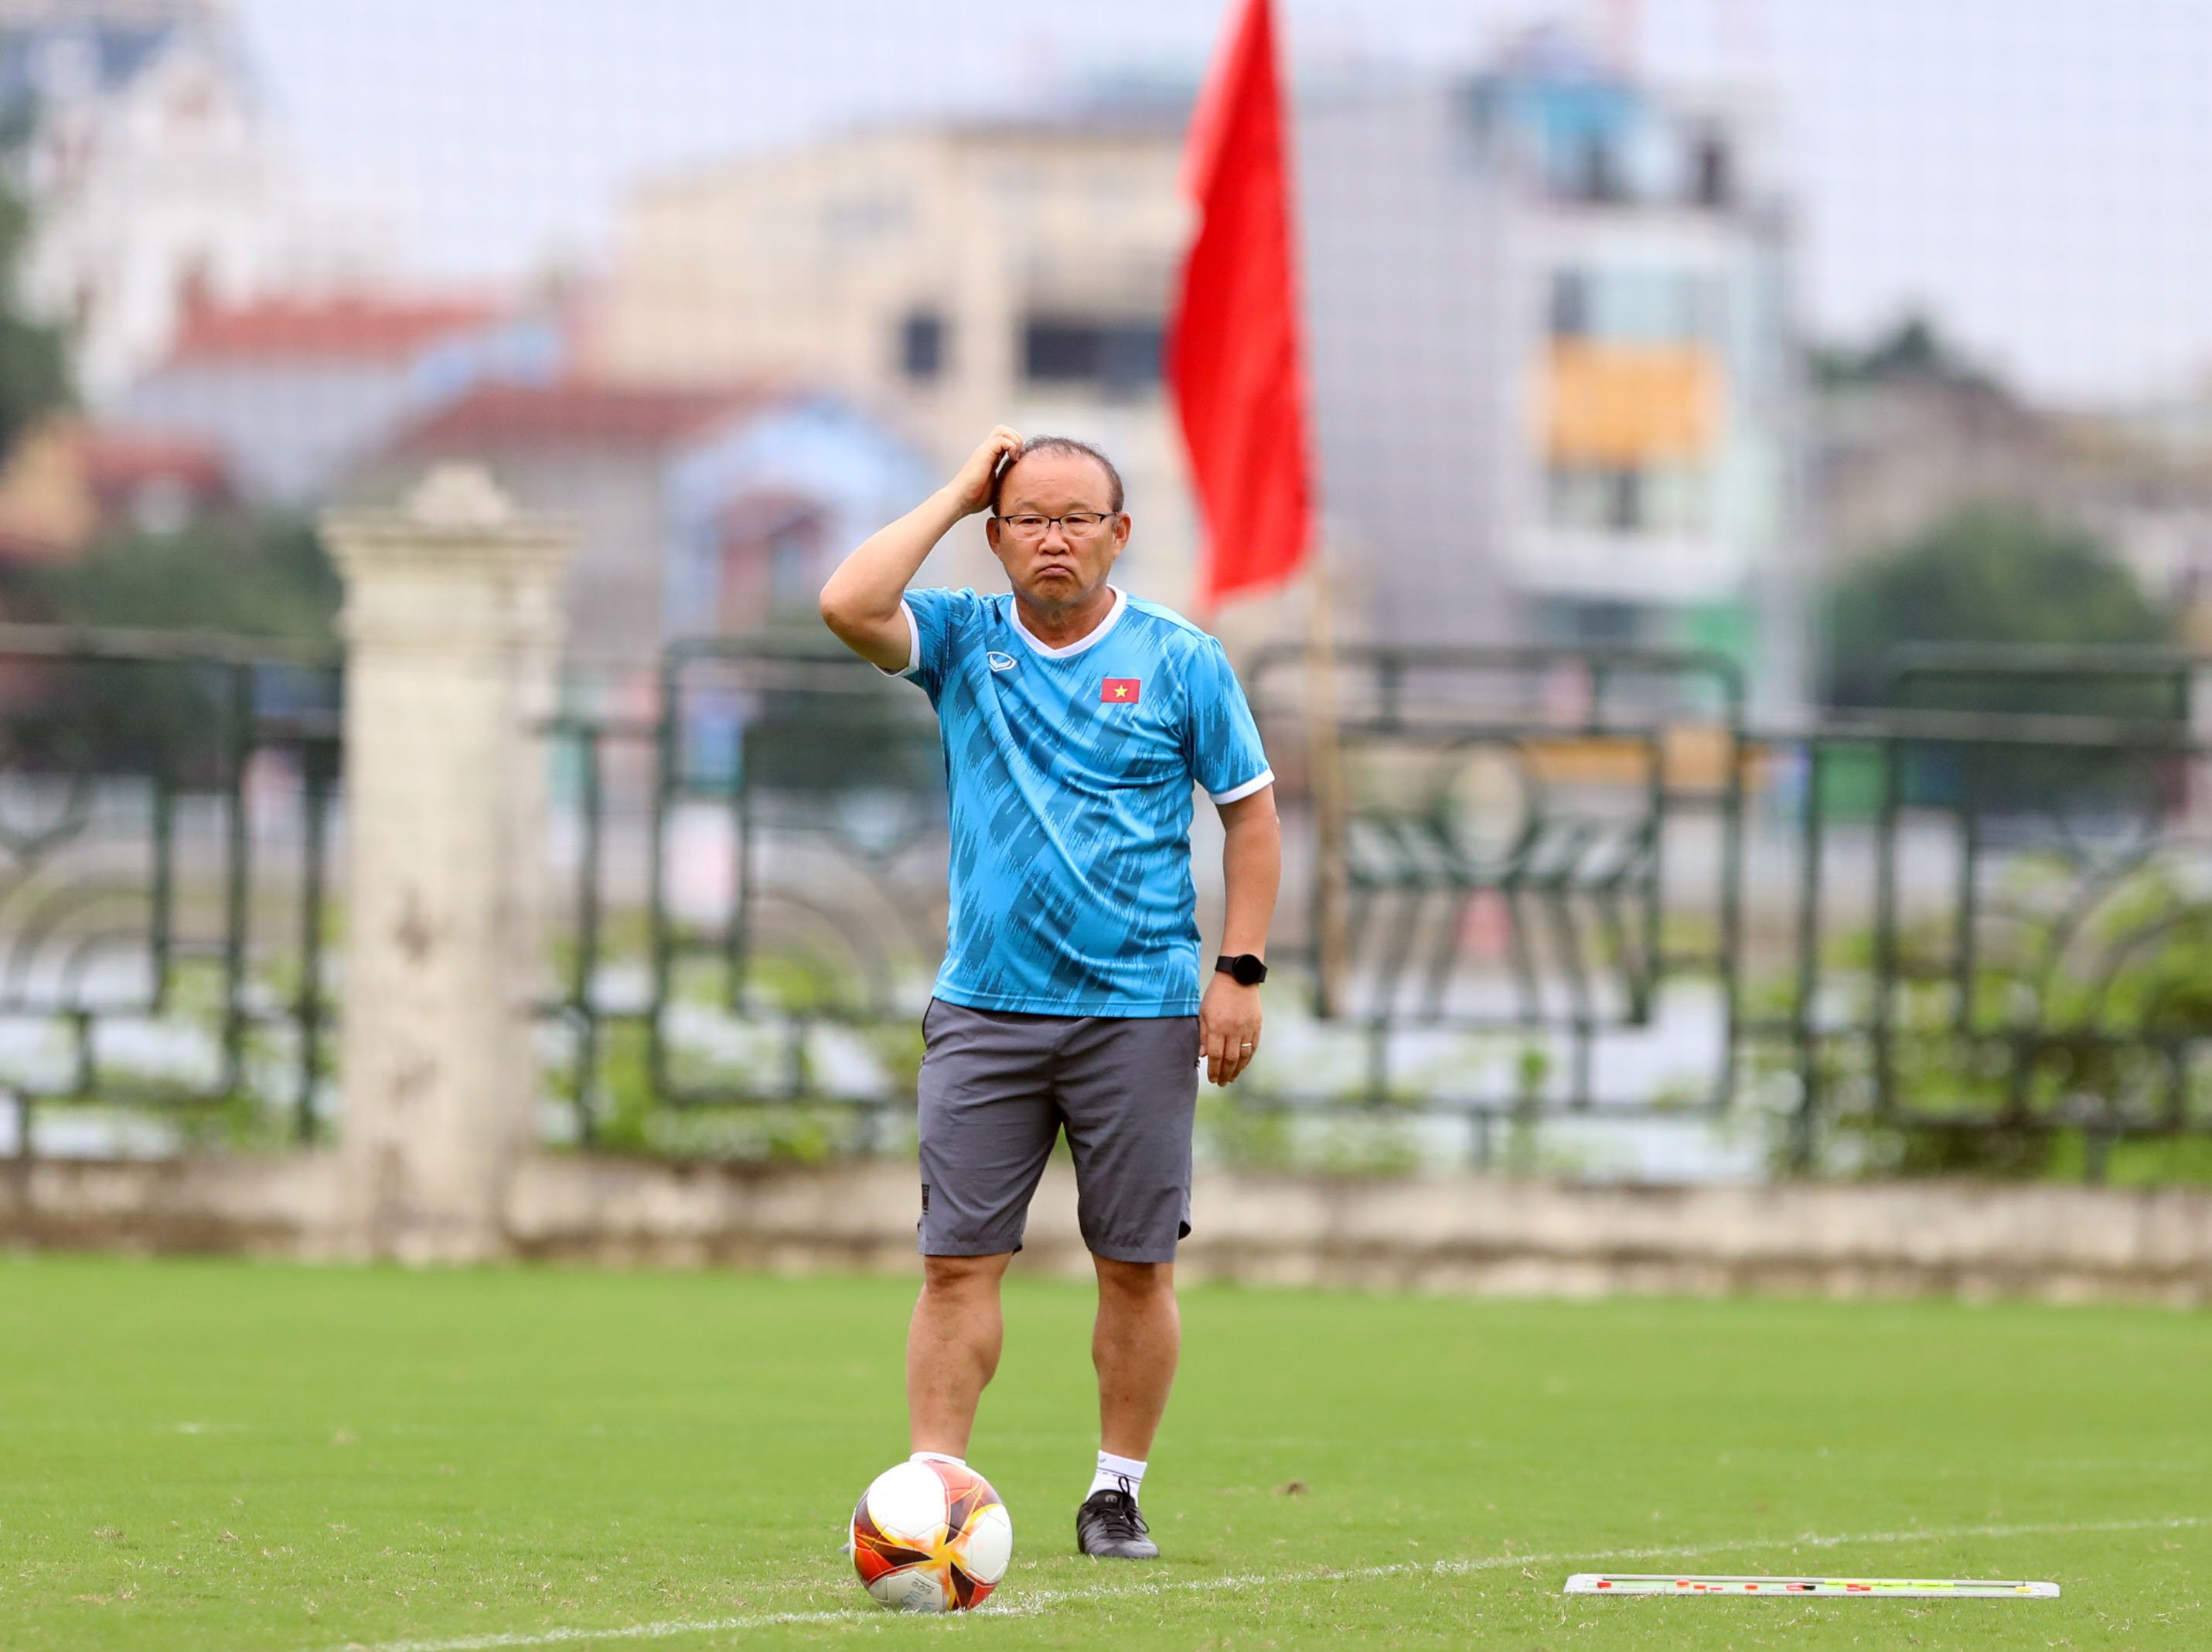 Chia sẻ sau trận đấu, HLV Park Hang Seo cho biết U23 Việt Nam chưa tốt và còn có nhiều vấn đề cần chỉnh sửa như chuyền bóng thiếu chính xác, vội vàng. Tối 15/5, U23 Việt Nam bước vào trận gặp cuối với U23 Timor Leste